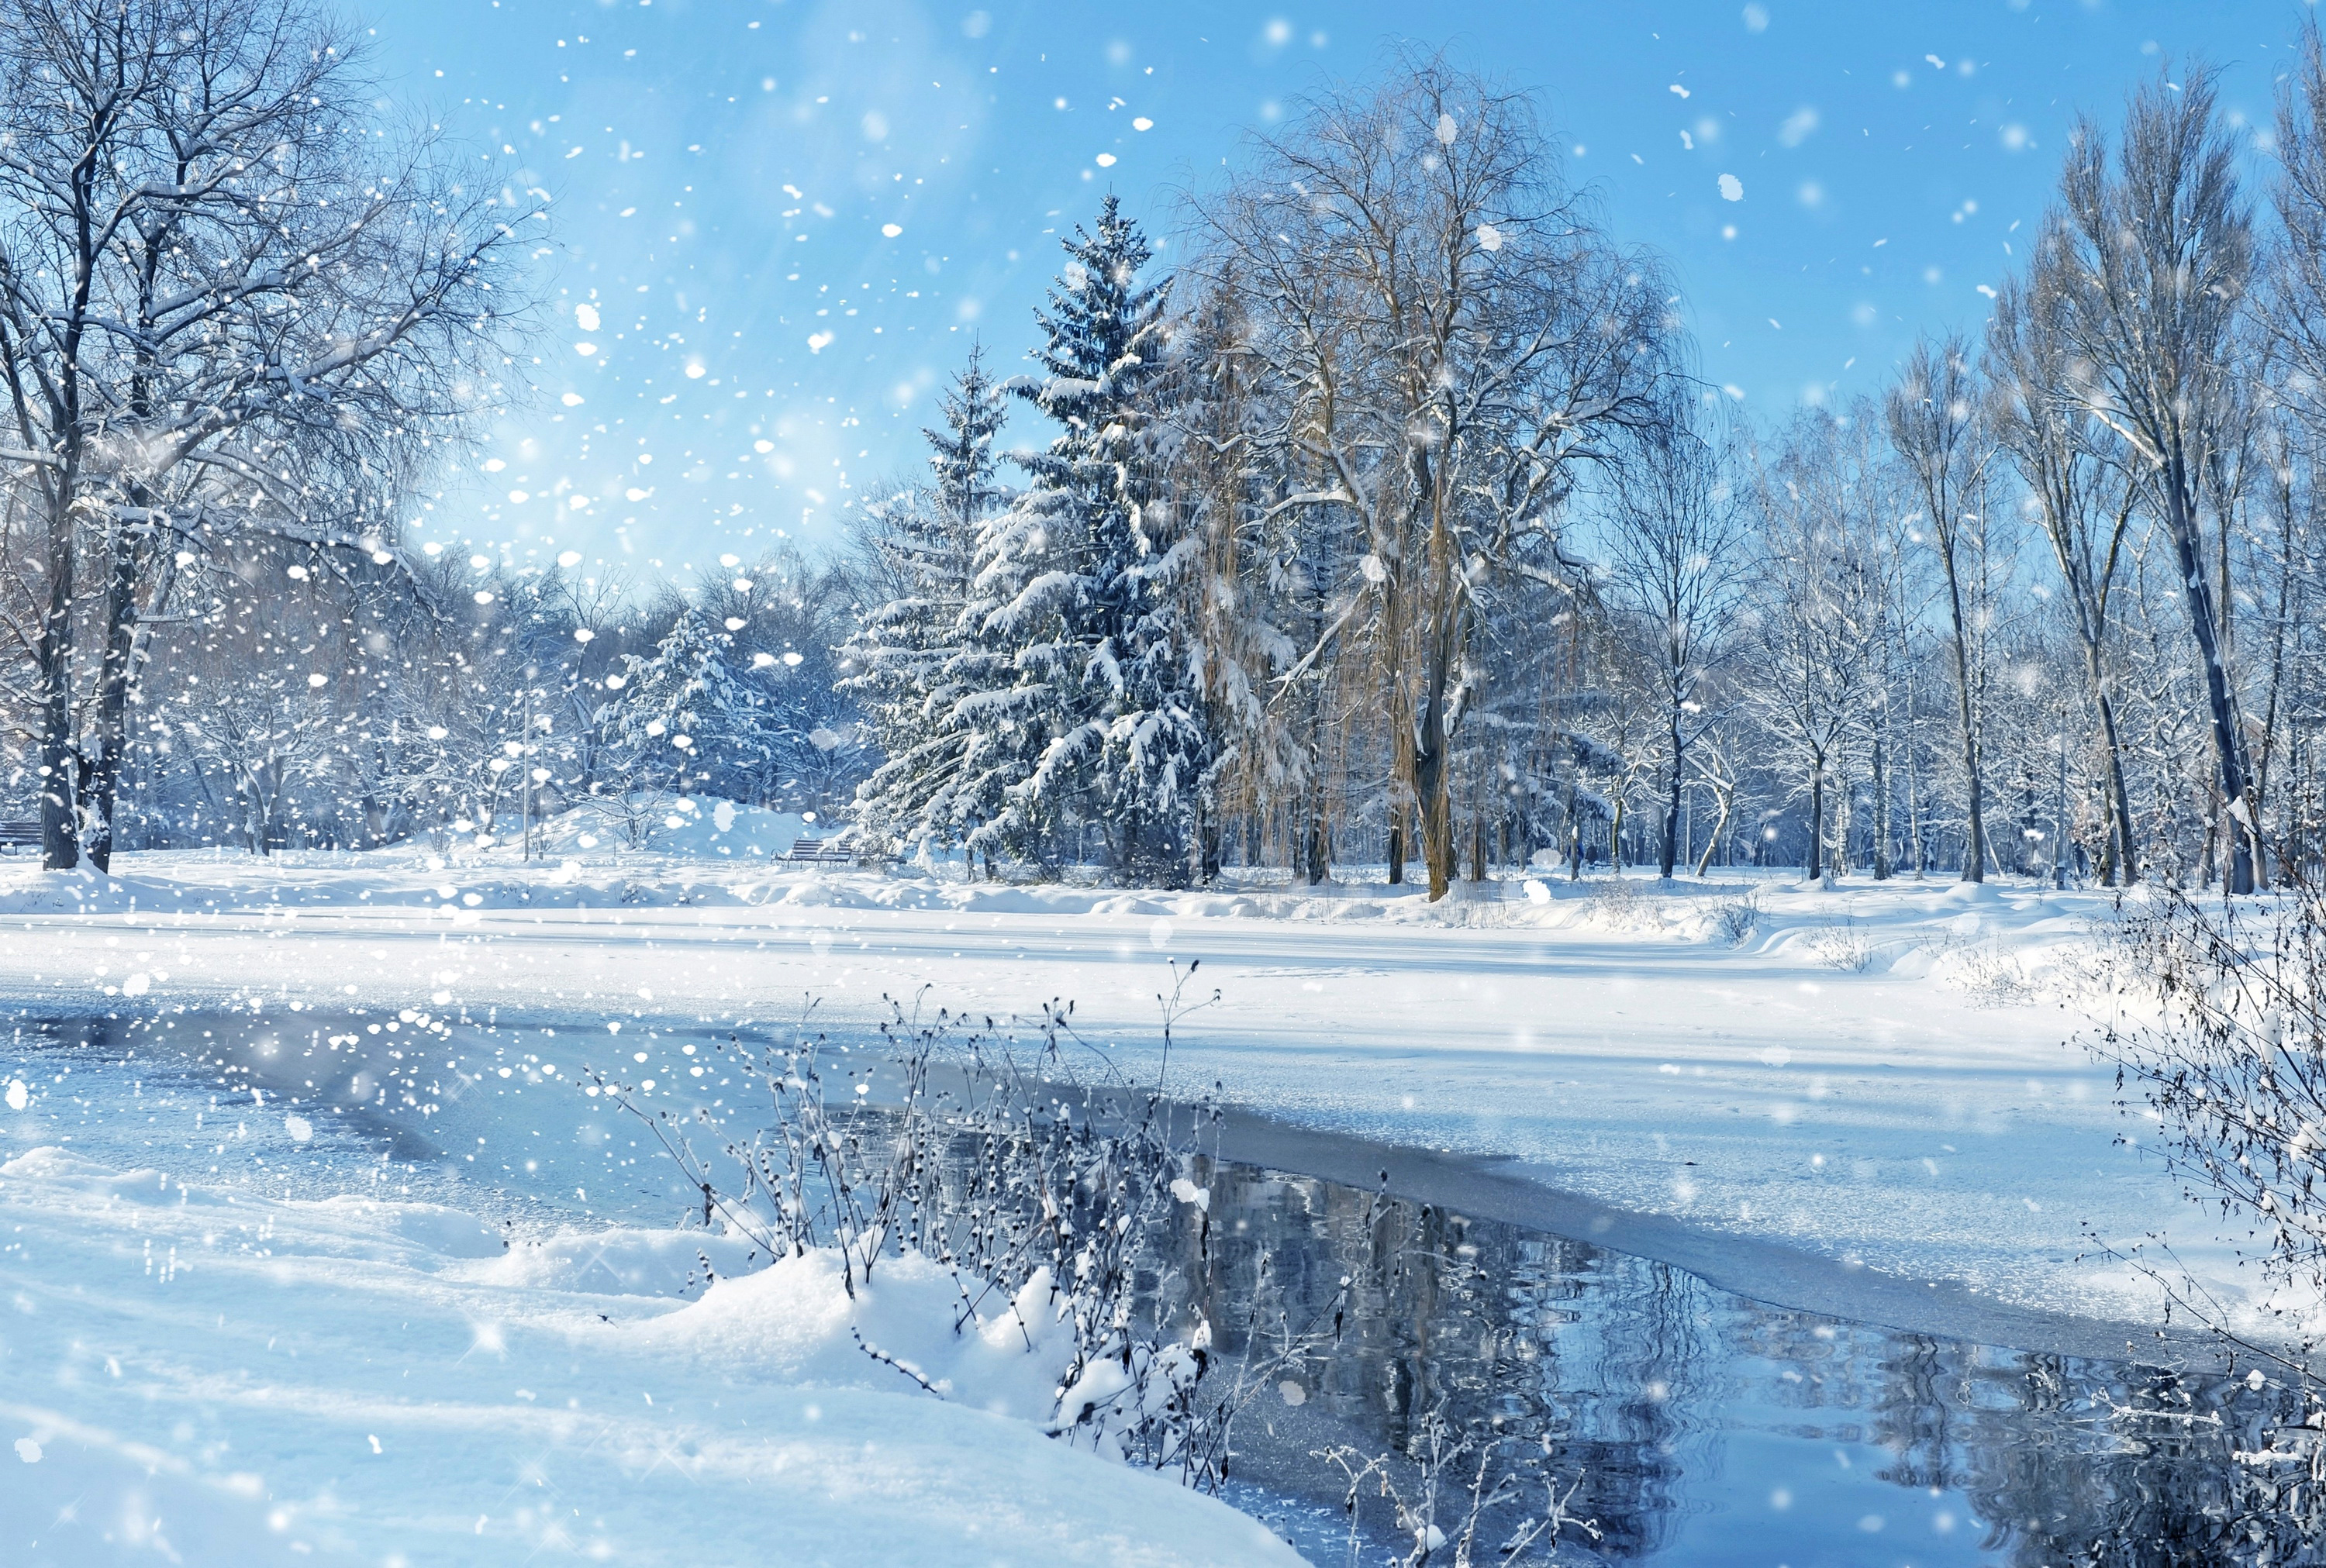 Скачать обои бесплатно Зима, Снег, Парк, Дерево, Снегопад, Земля/природа картинка на рабочий стол ПК